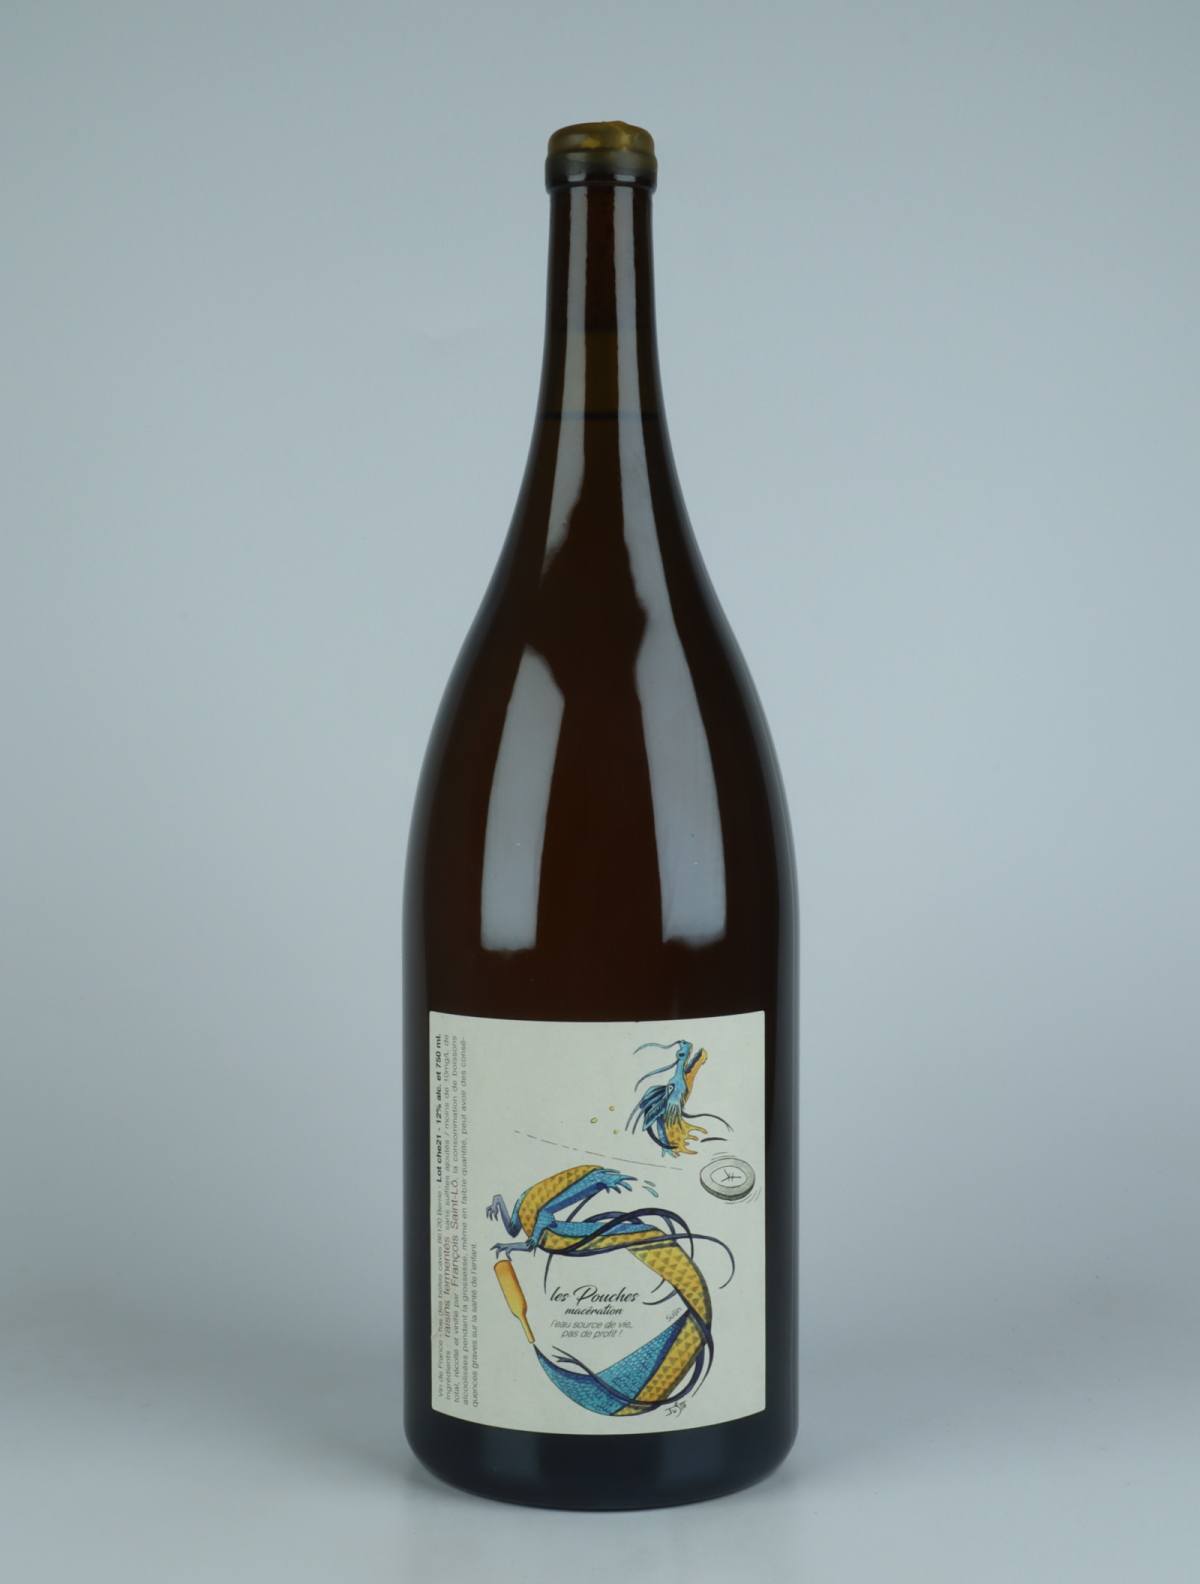 A bottle 2021 Les Pouches Macération - Magnum White wine from François Saint-Lô, Loire in France